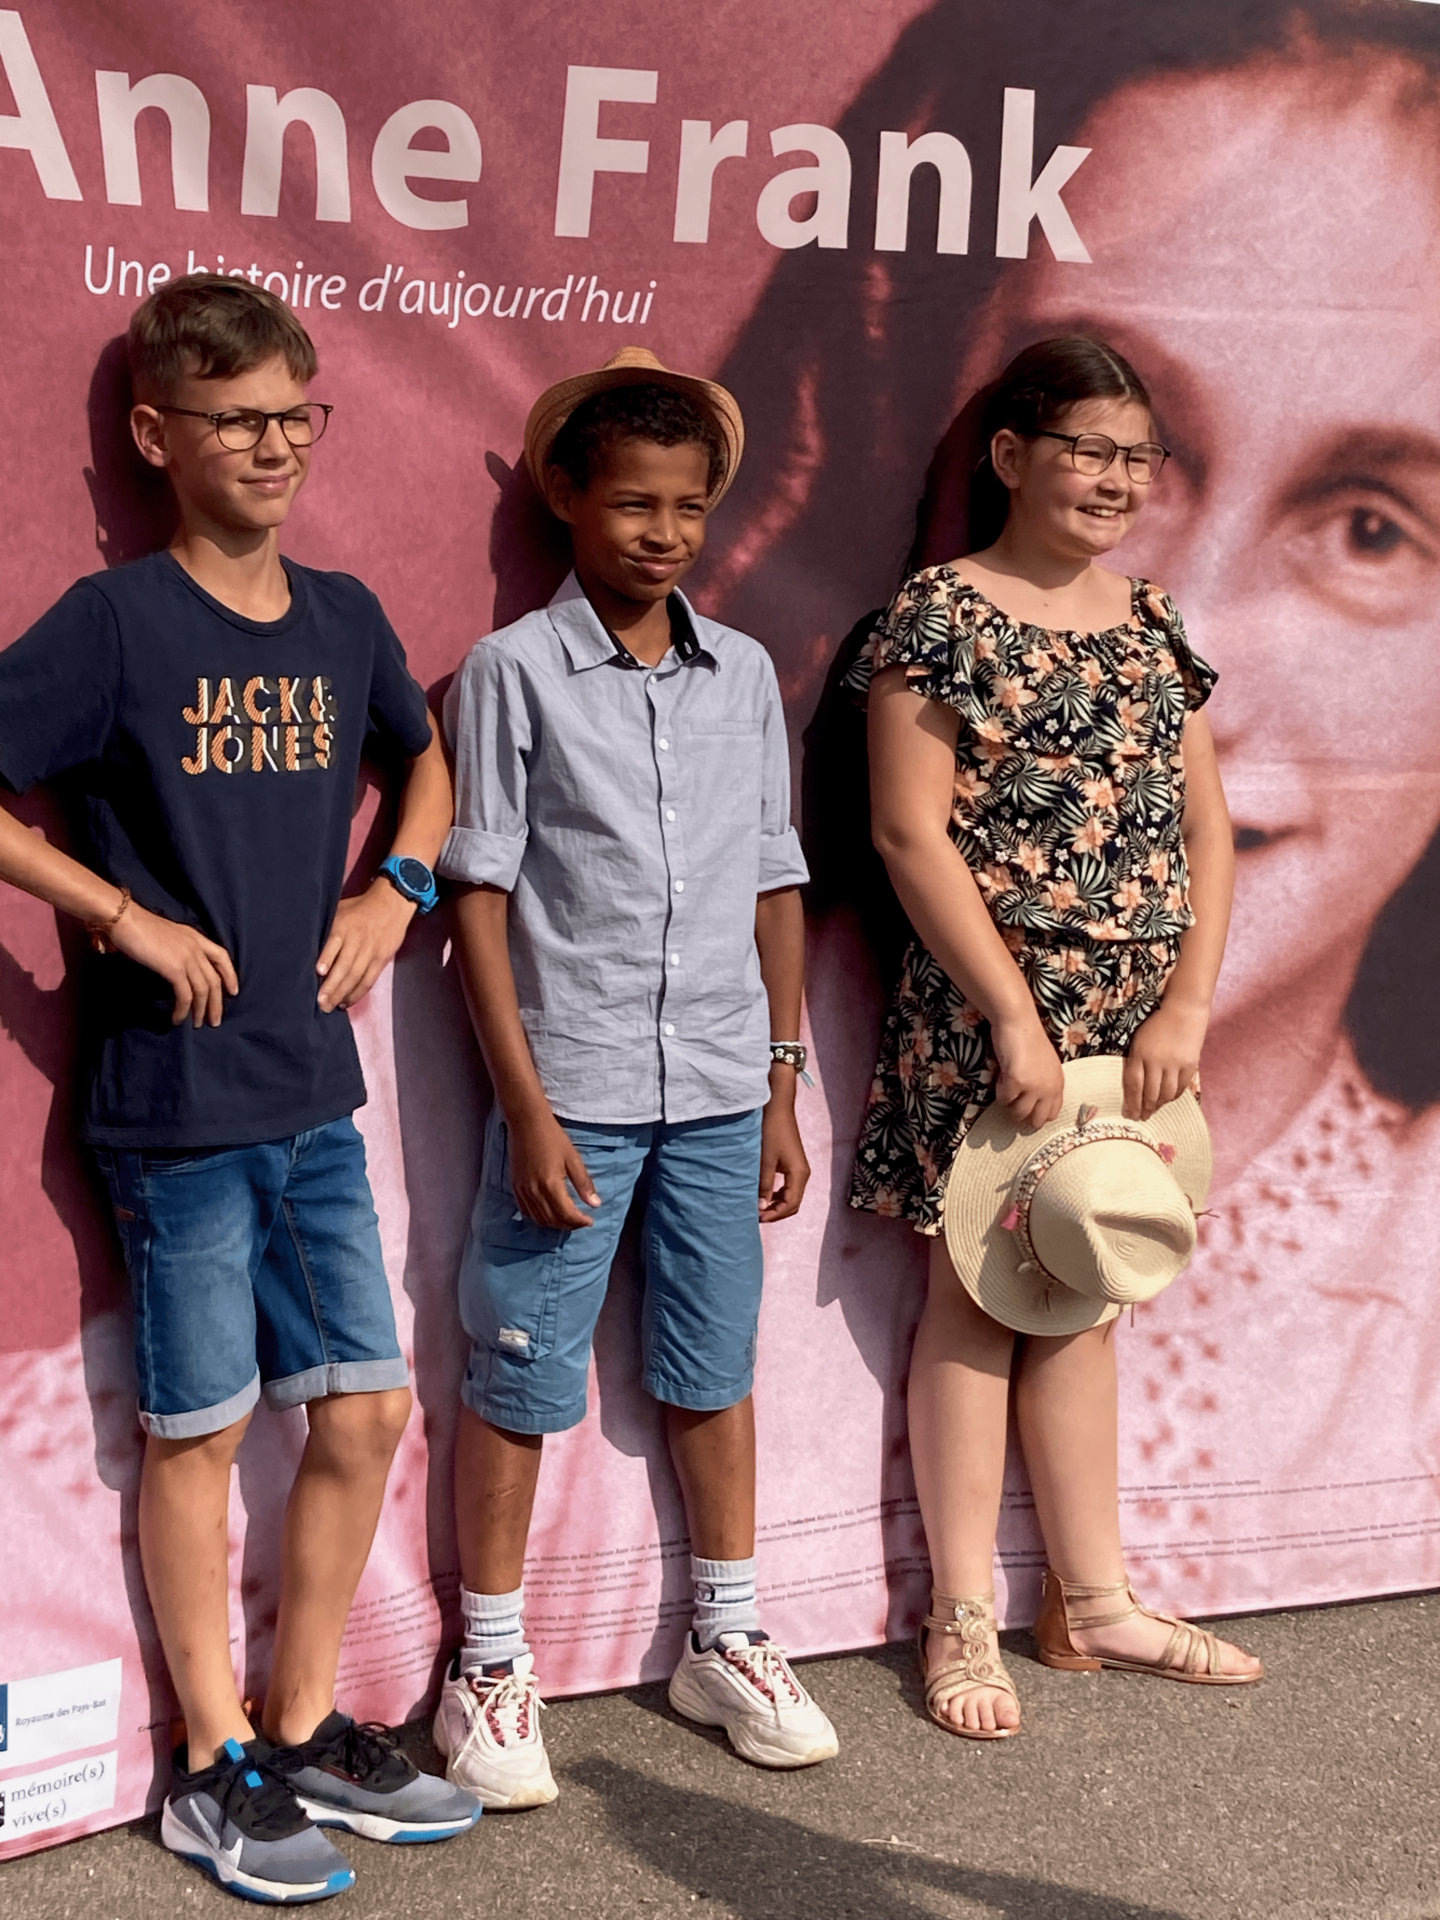 Les guides Anne Frank